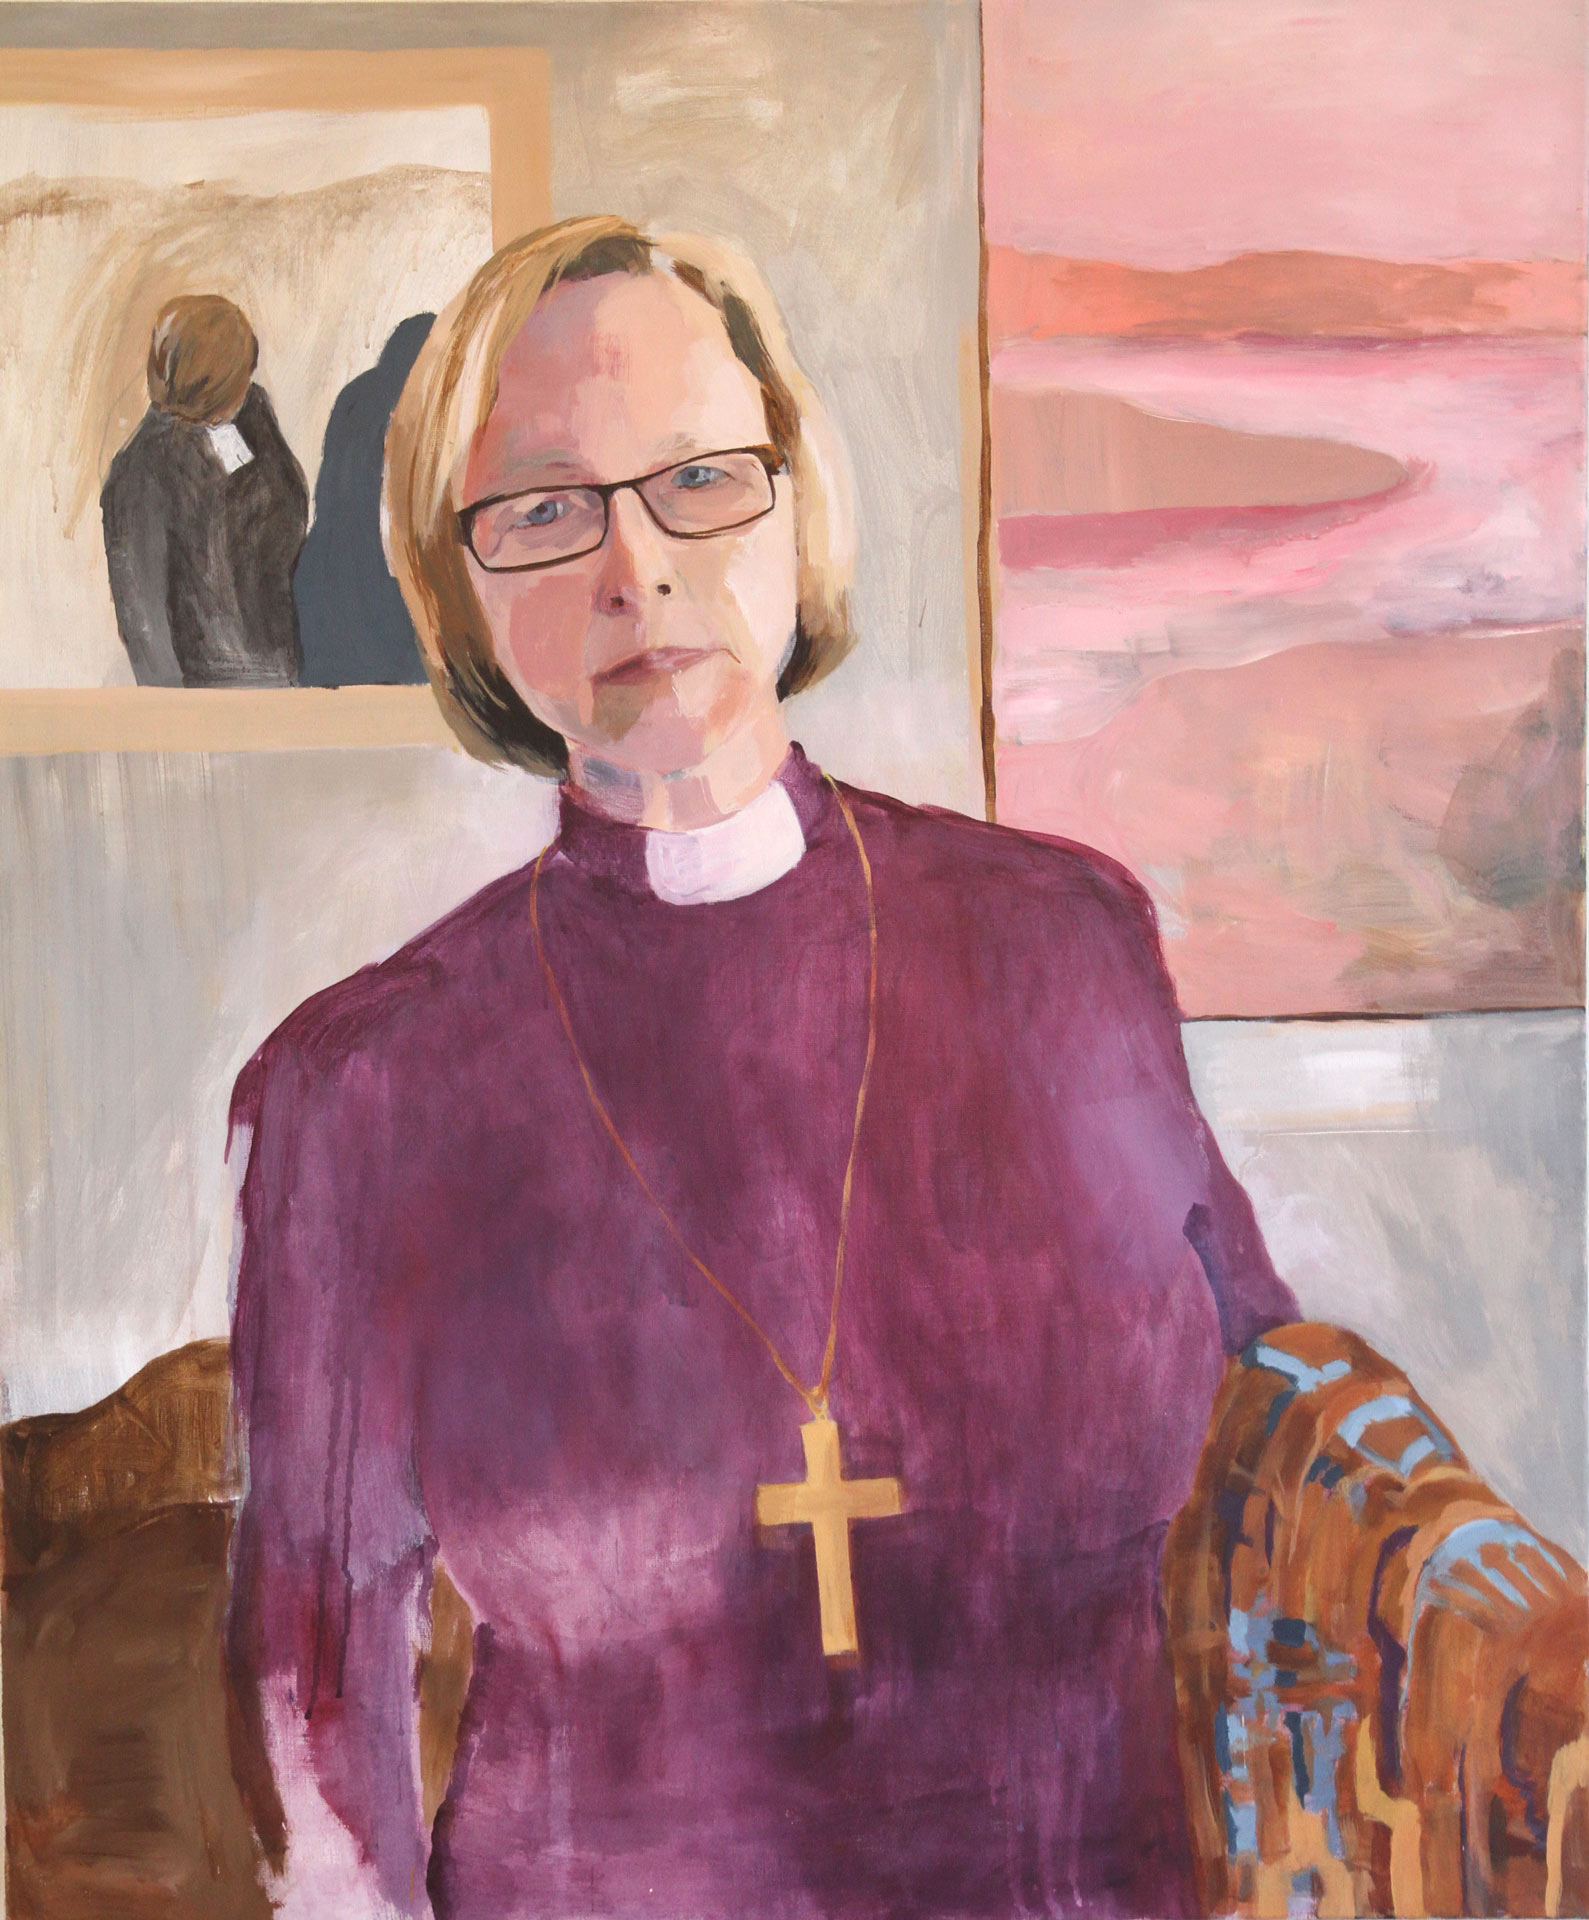 Biskop Tuulikki Koivunen Bylund, målning av Jenny Lundgren